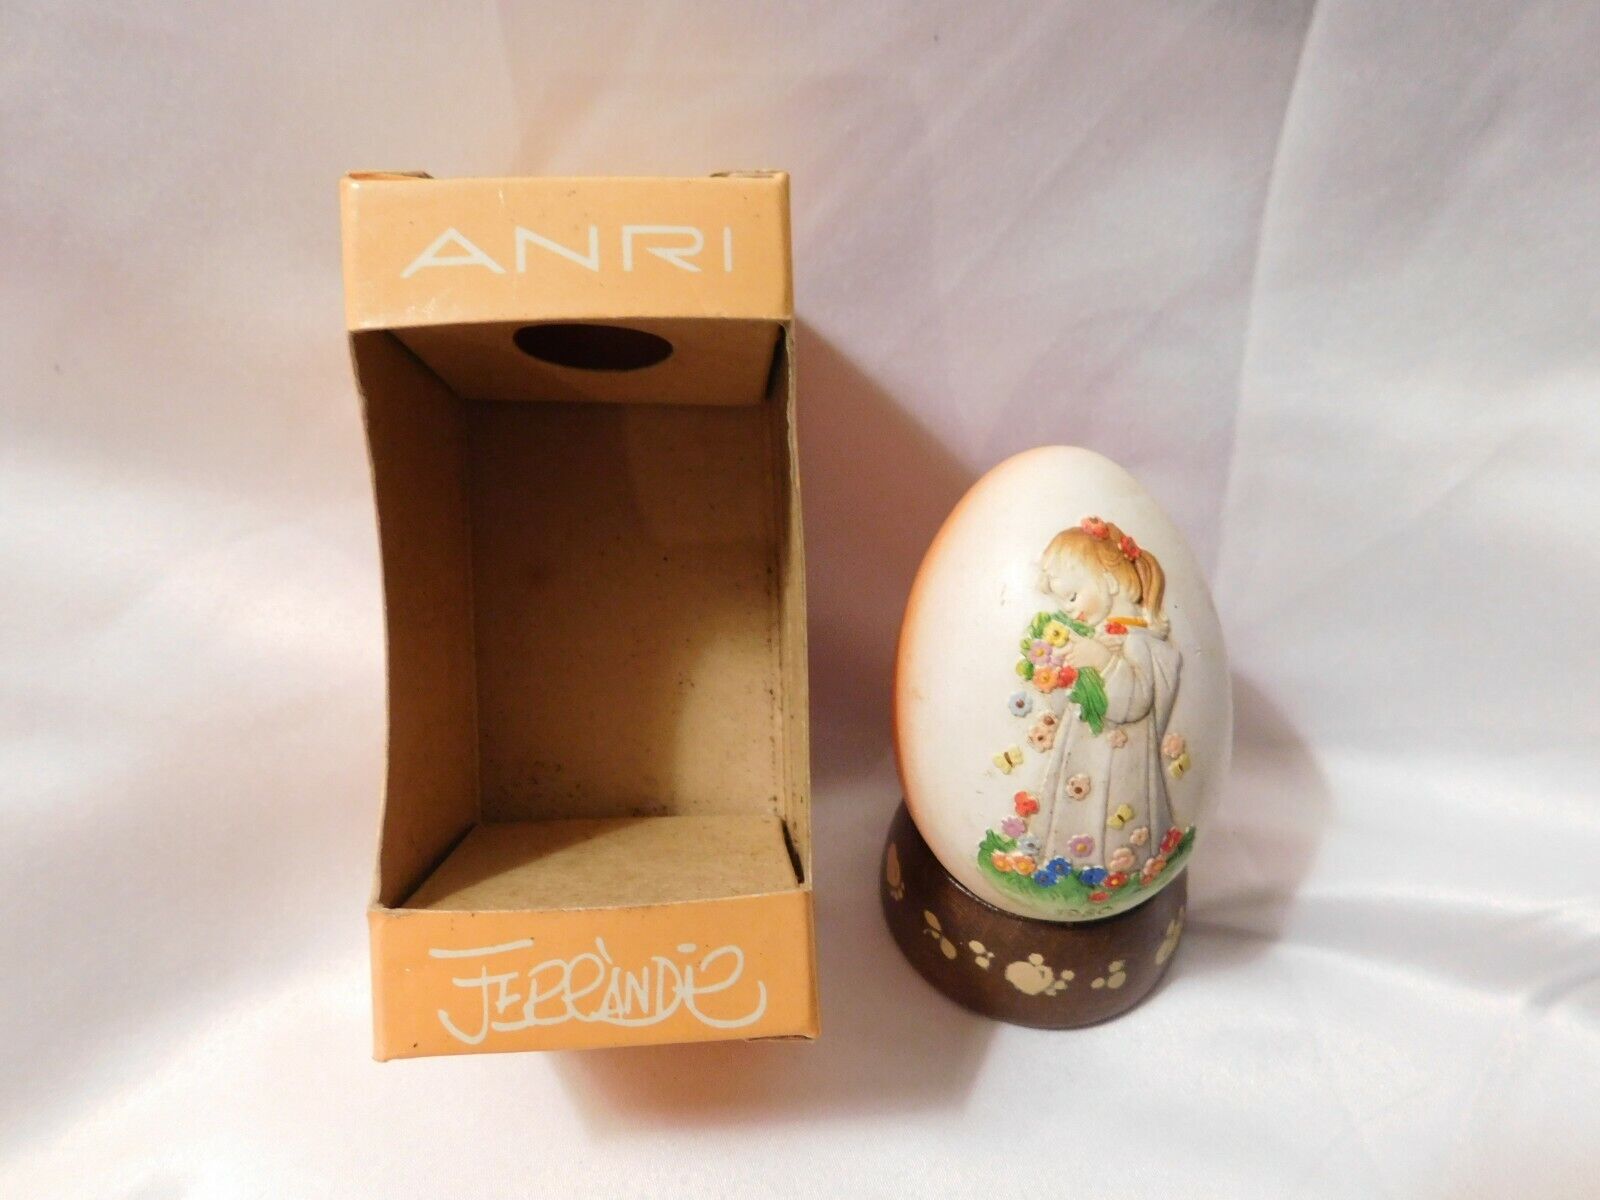 Anri Annual Egg Third in Series Ferrandiz VTG